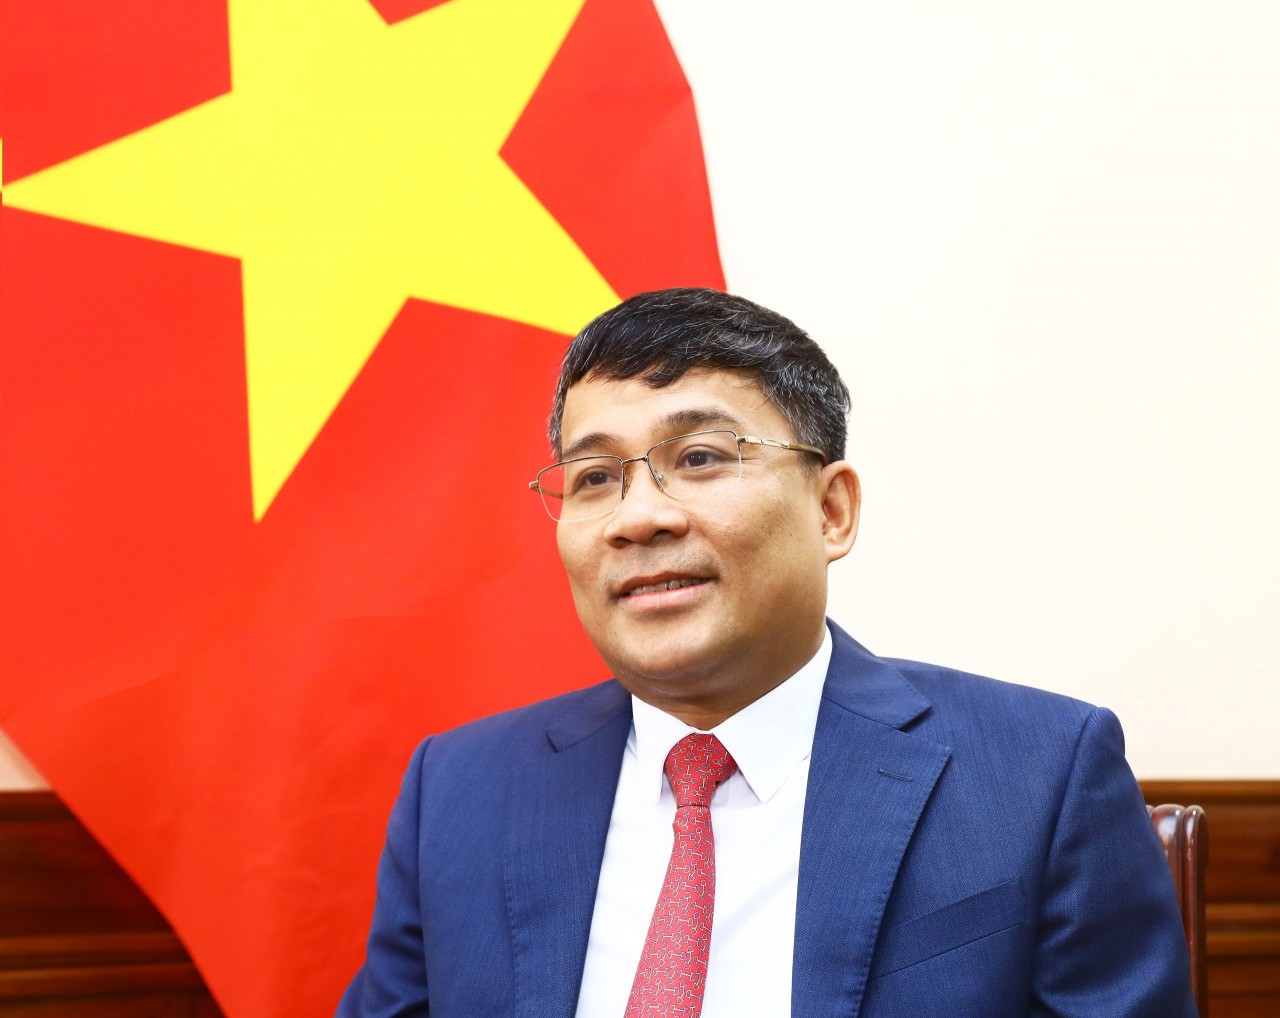 Kỳ vọng quan hệ Việt Nam-Trung Quốc sẽ đạt tầm mức mới